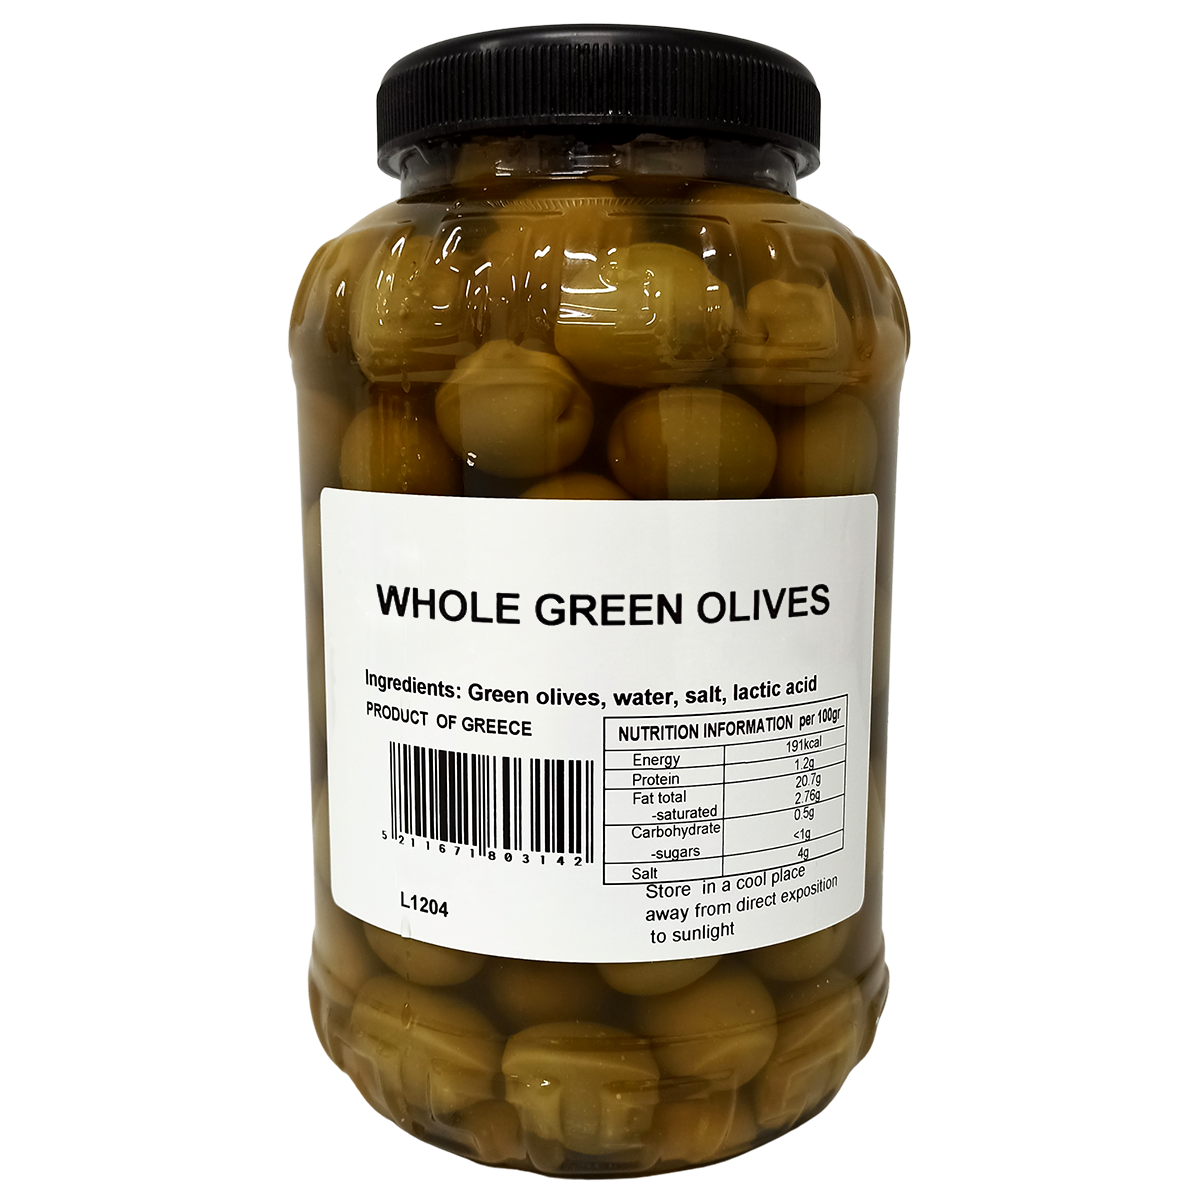 アマルシア グリーン・オリーブ 種あり AMALTHIA GREEN OLIVES • WHOLE YORUGOS  ギリシャ・ヨーロッパから直輸入のユニークなワインと食品